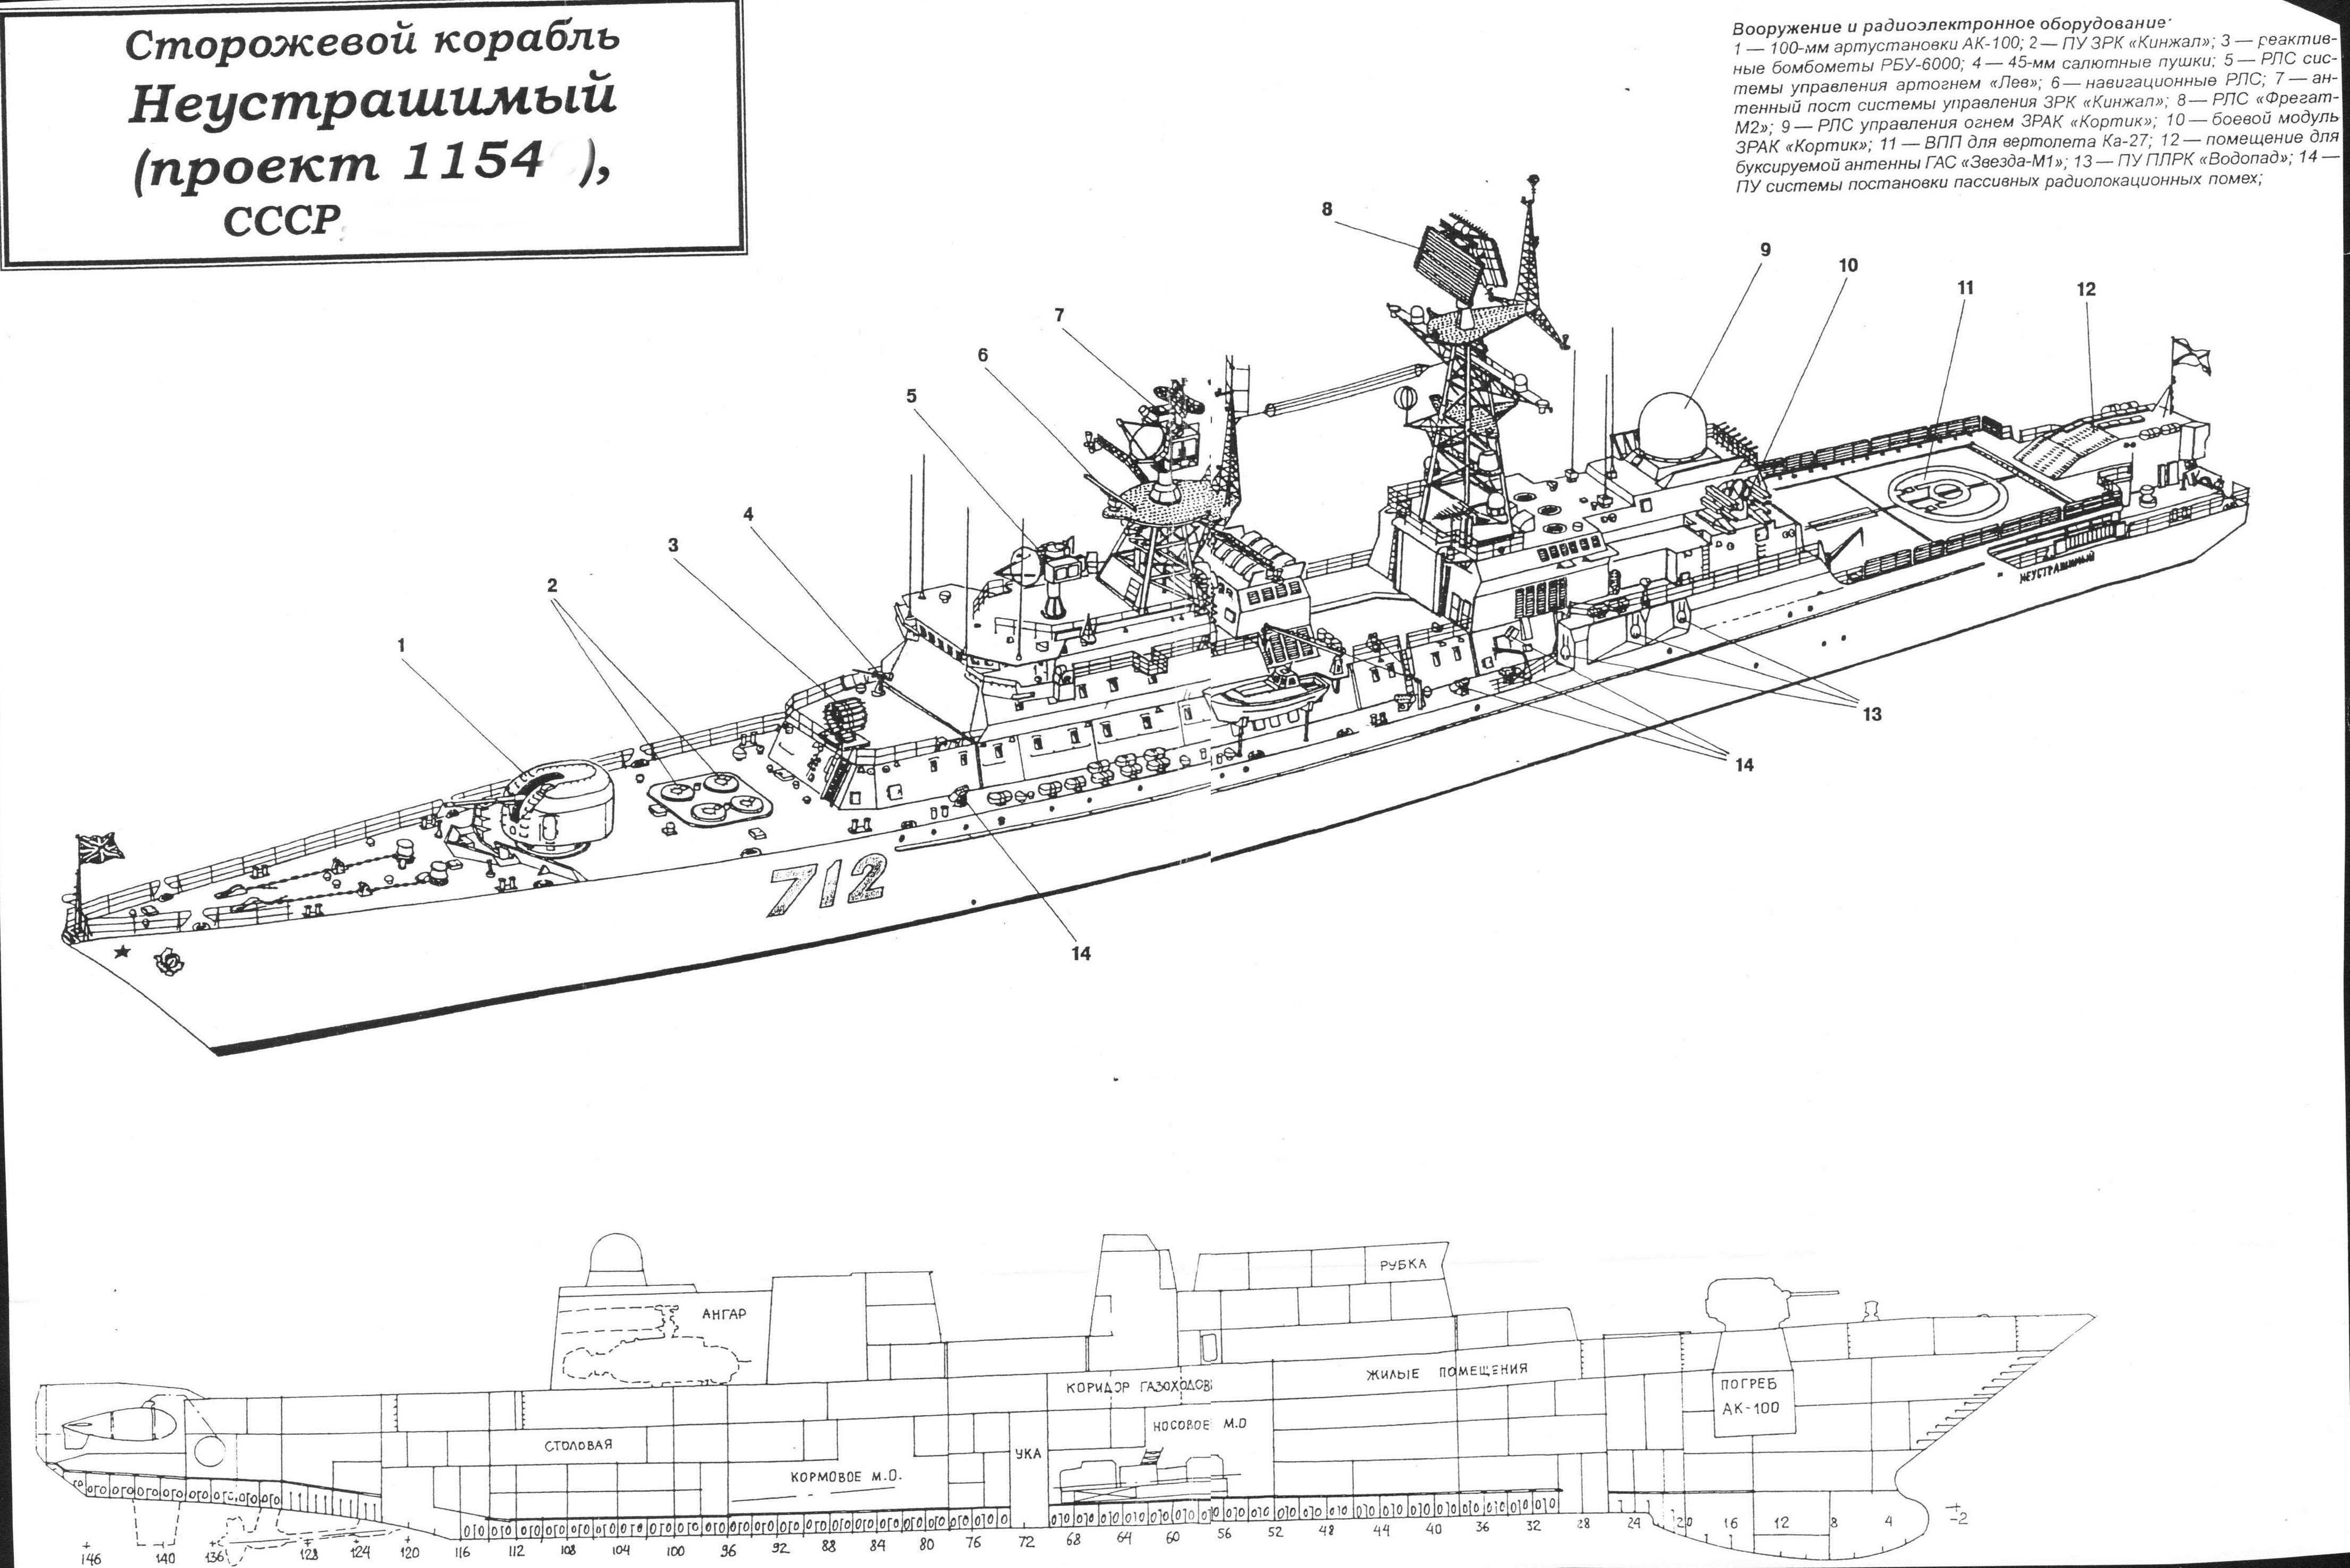 Сторожевые корабли проекта 11540: неустрашимый, фрегат, история создания, конструкция, характеристики